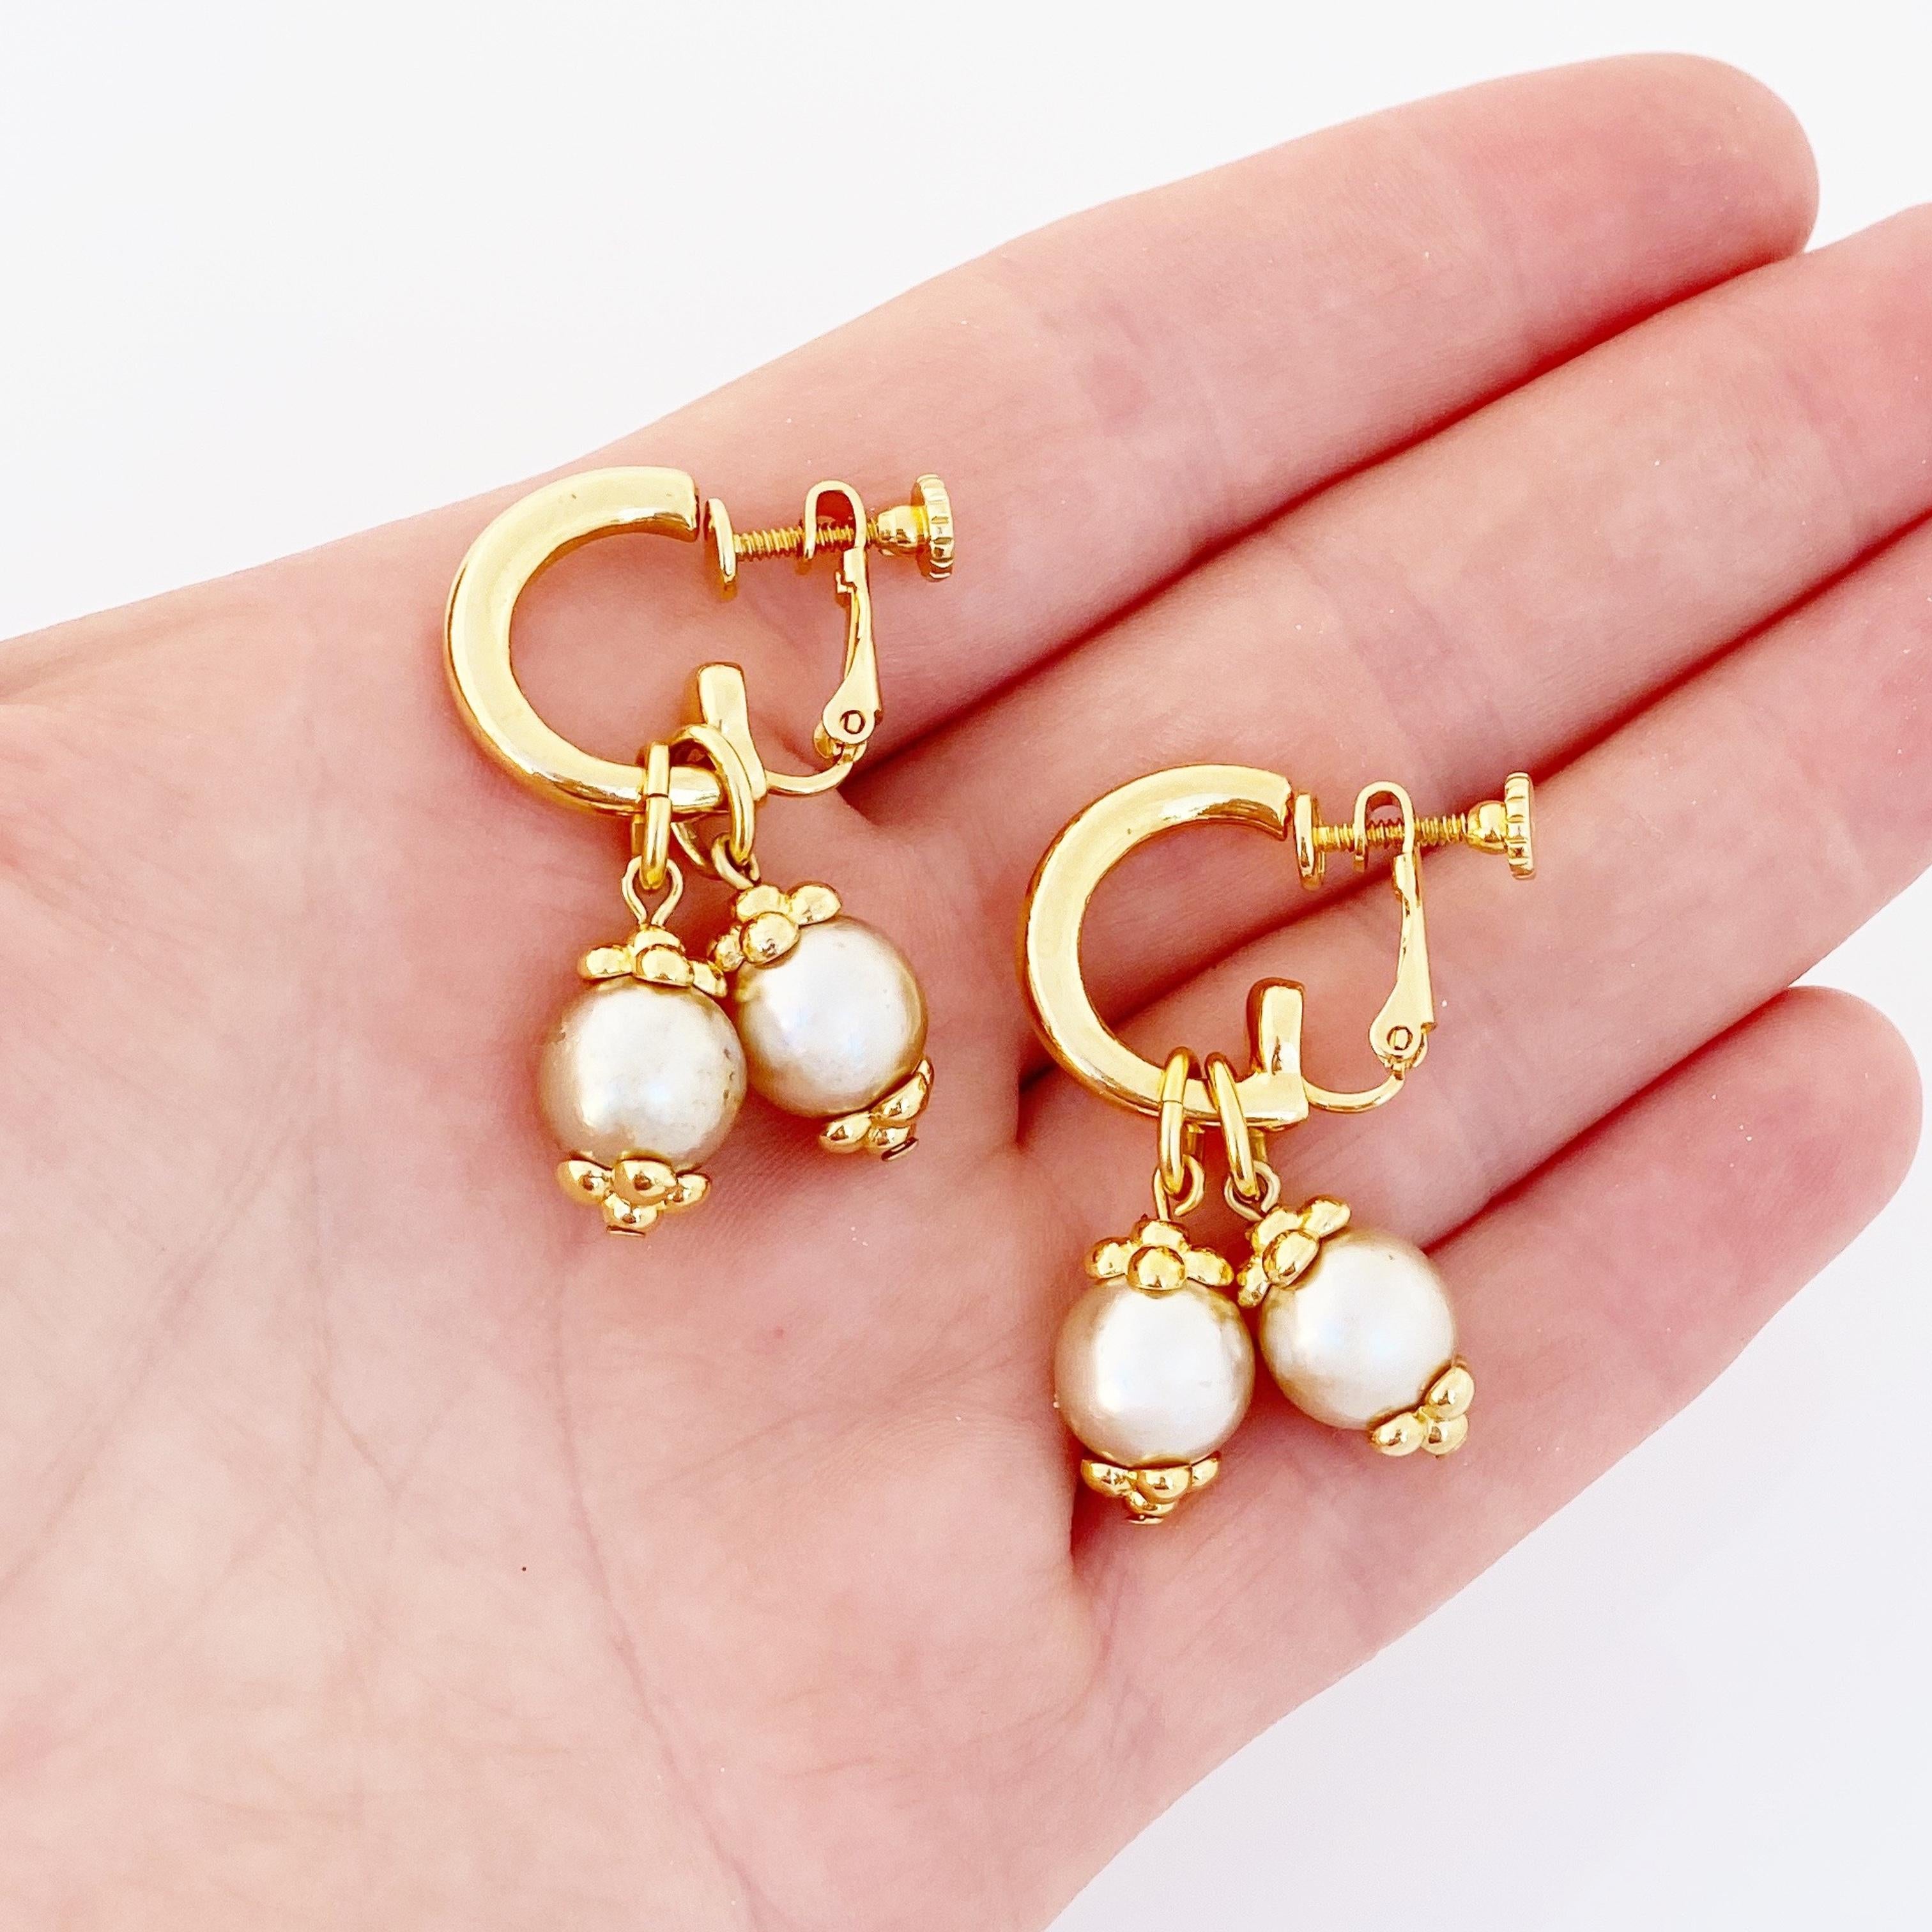 1990s earrings